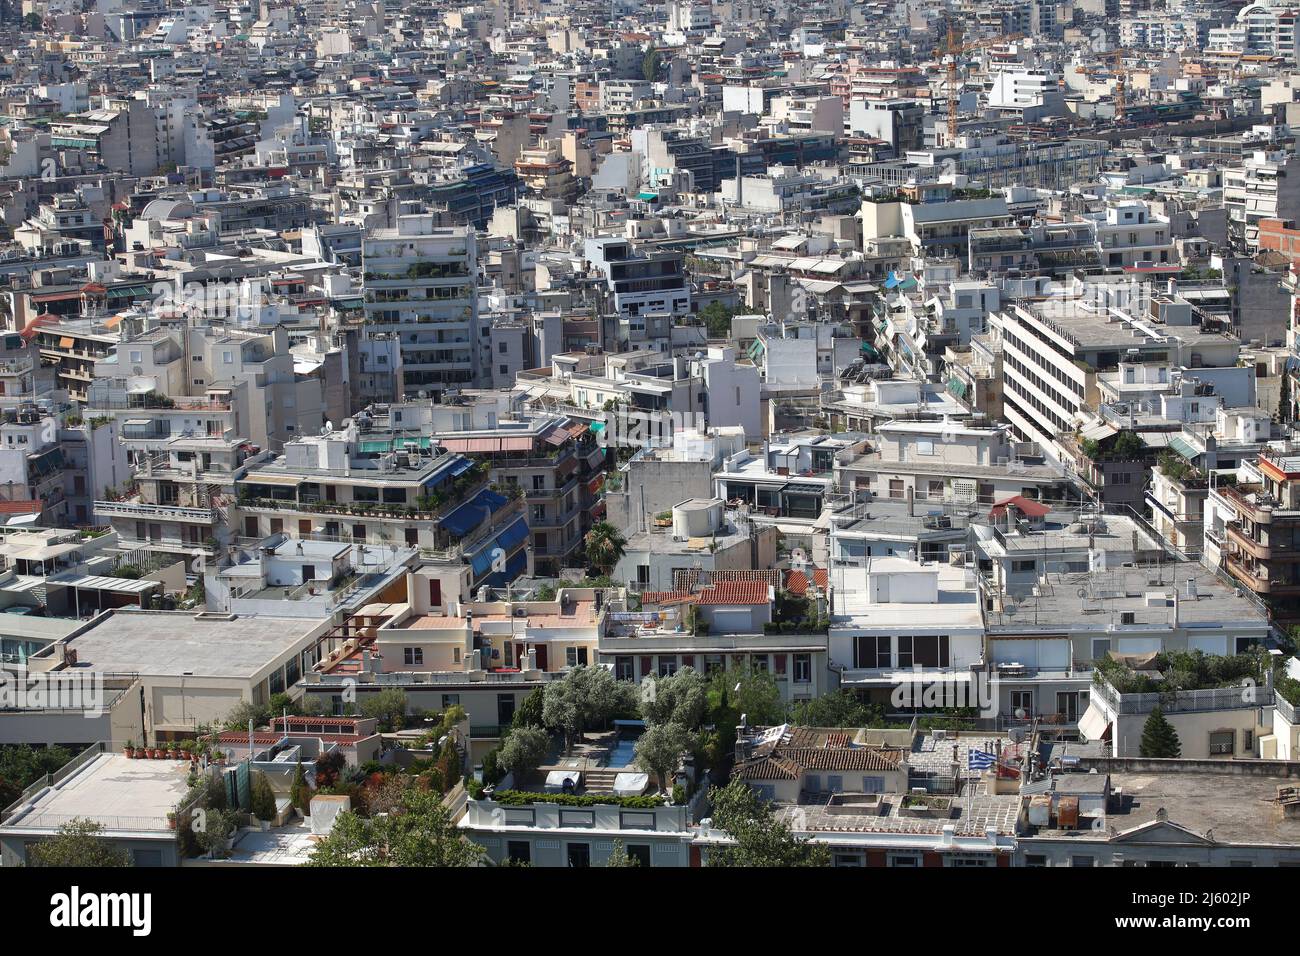 Vista sulla città di Atene dall'Acropoli in Grecia. Atene è una delle città più antiche del mondo. Foto Stock